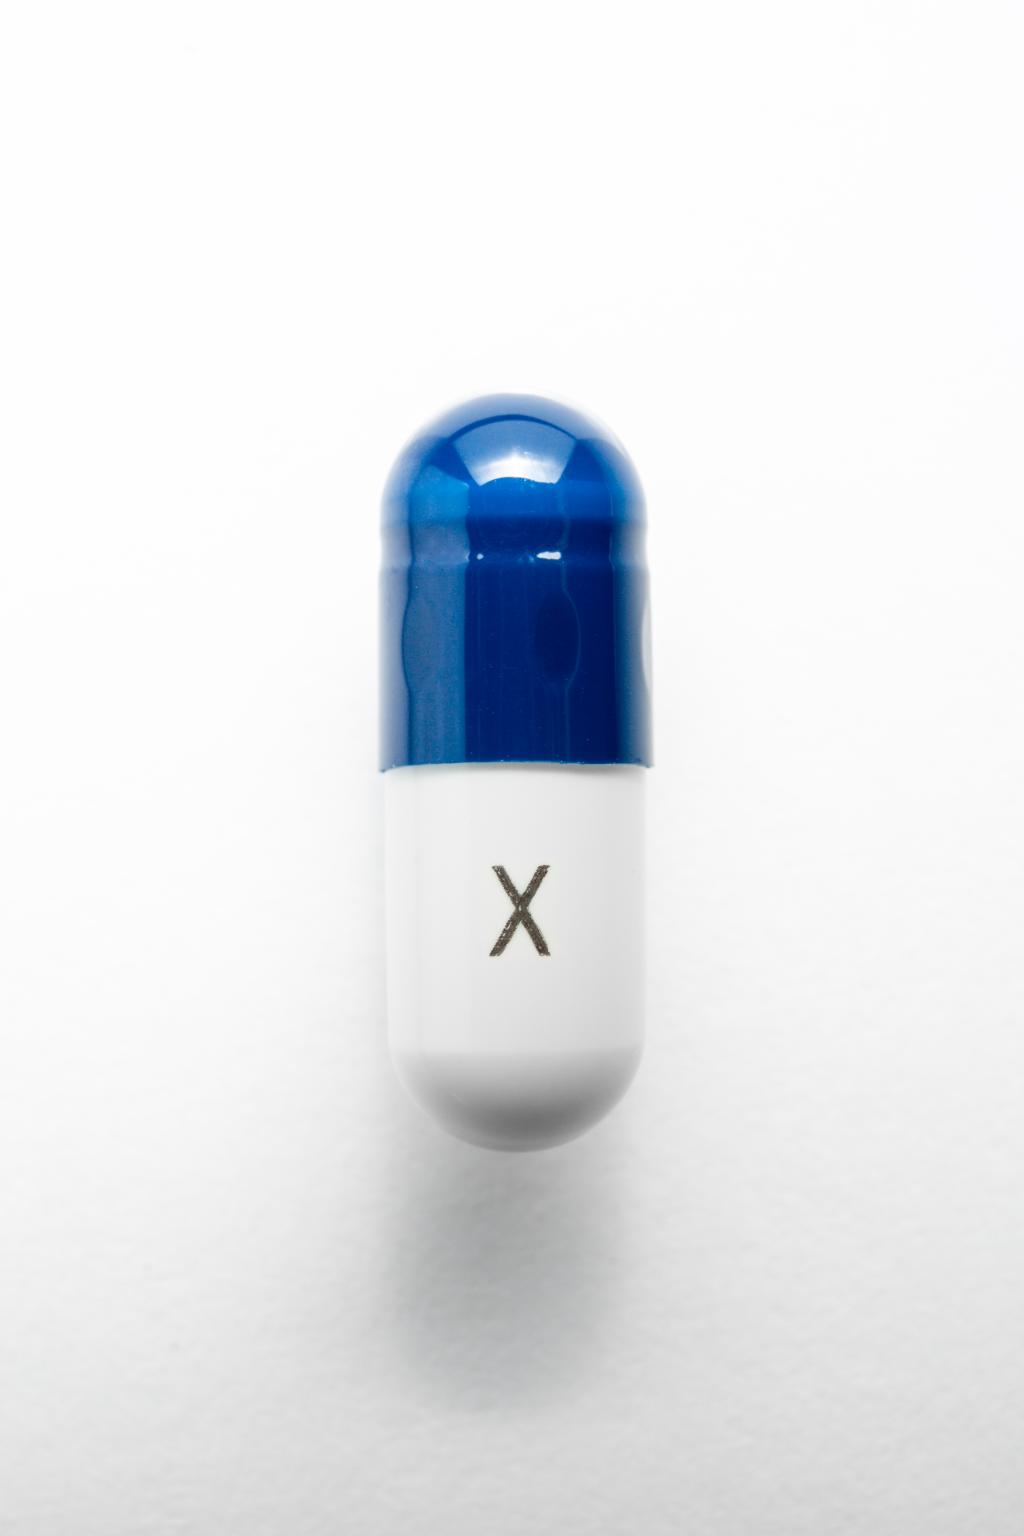 Blauwwitte capsule met een X op de onderkant geschreven.